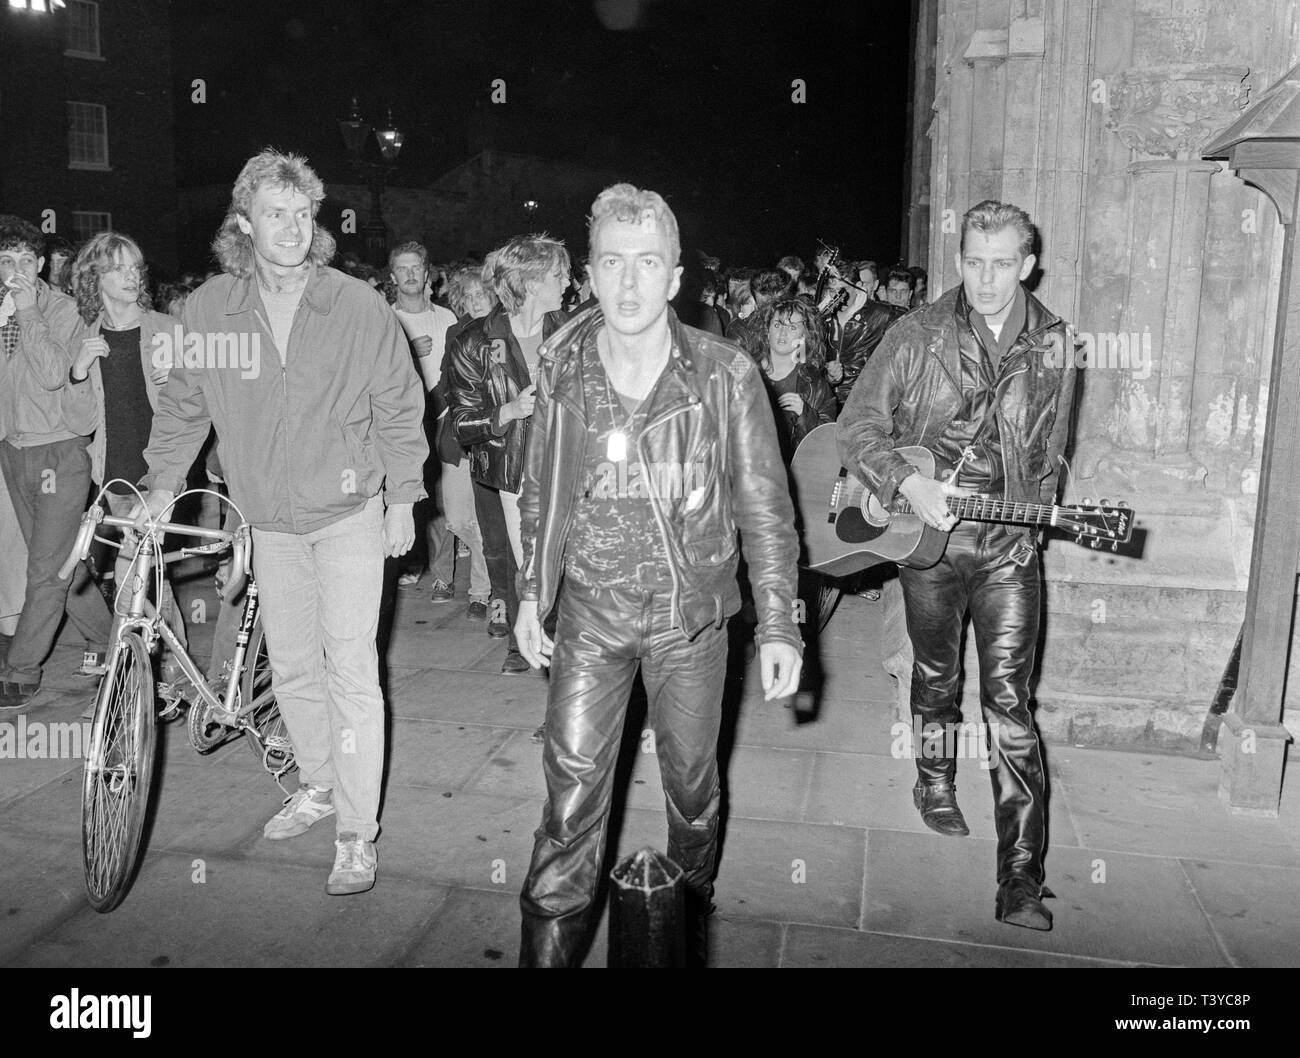 Il British Punk Rock gruppo lo scontro a York in Inghilterra il 8 maggio 1985. Ciò era parte di un semplice musicista di strada tour delle città del Regno Unito la band ha fatto, con un preavviso molto breve. Cantante Joe Strummer e il chitarrista Paul Simonon sono i principali soggetti. Foto Stock